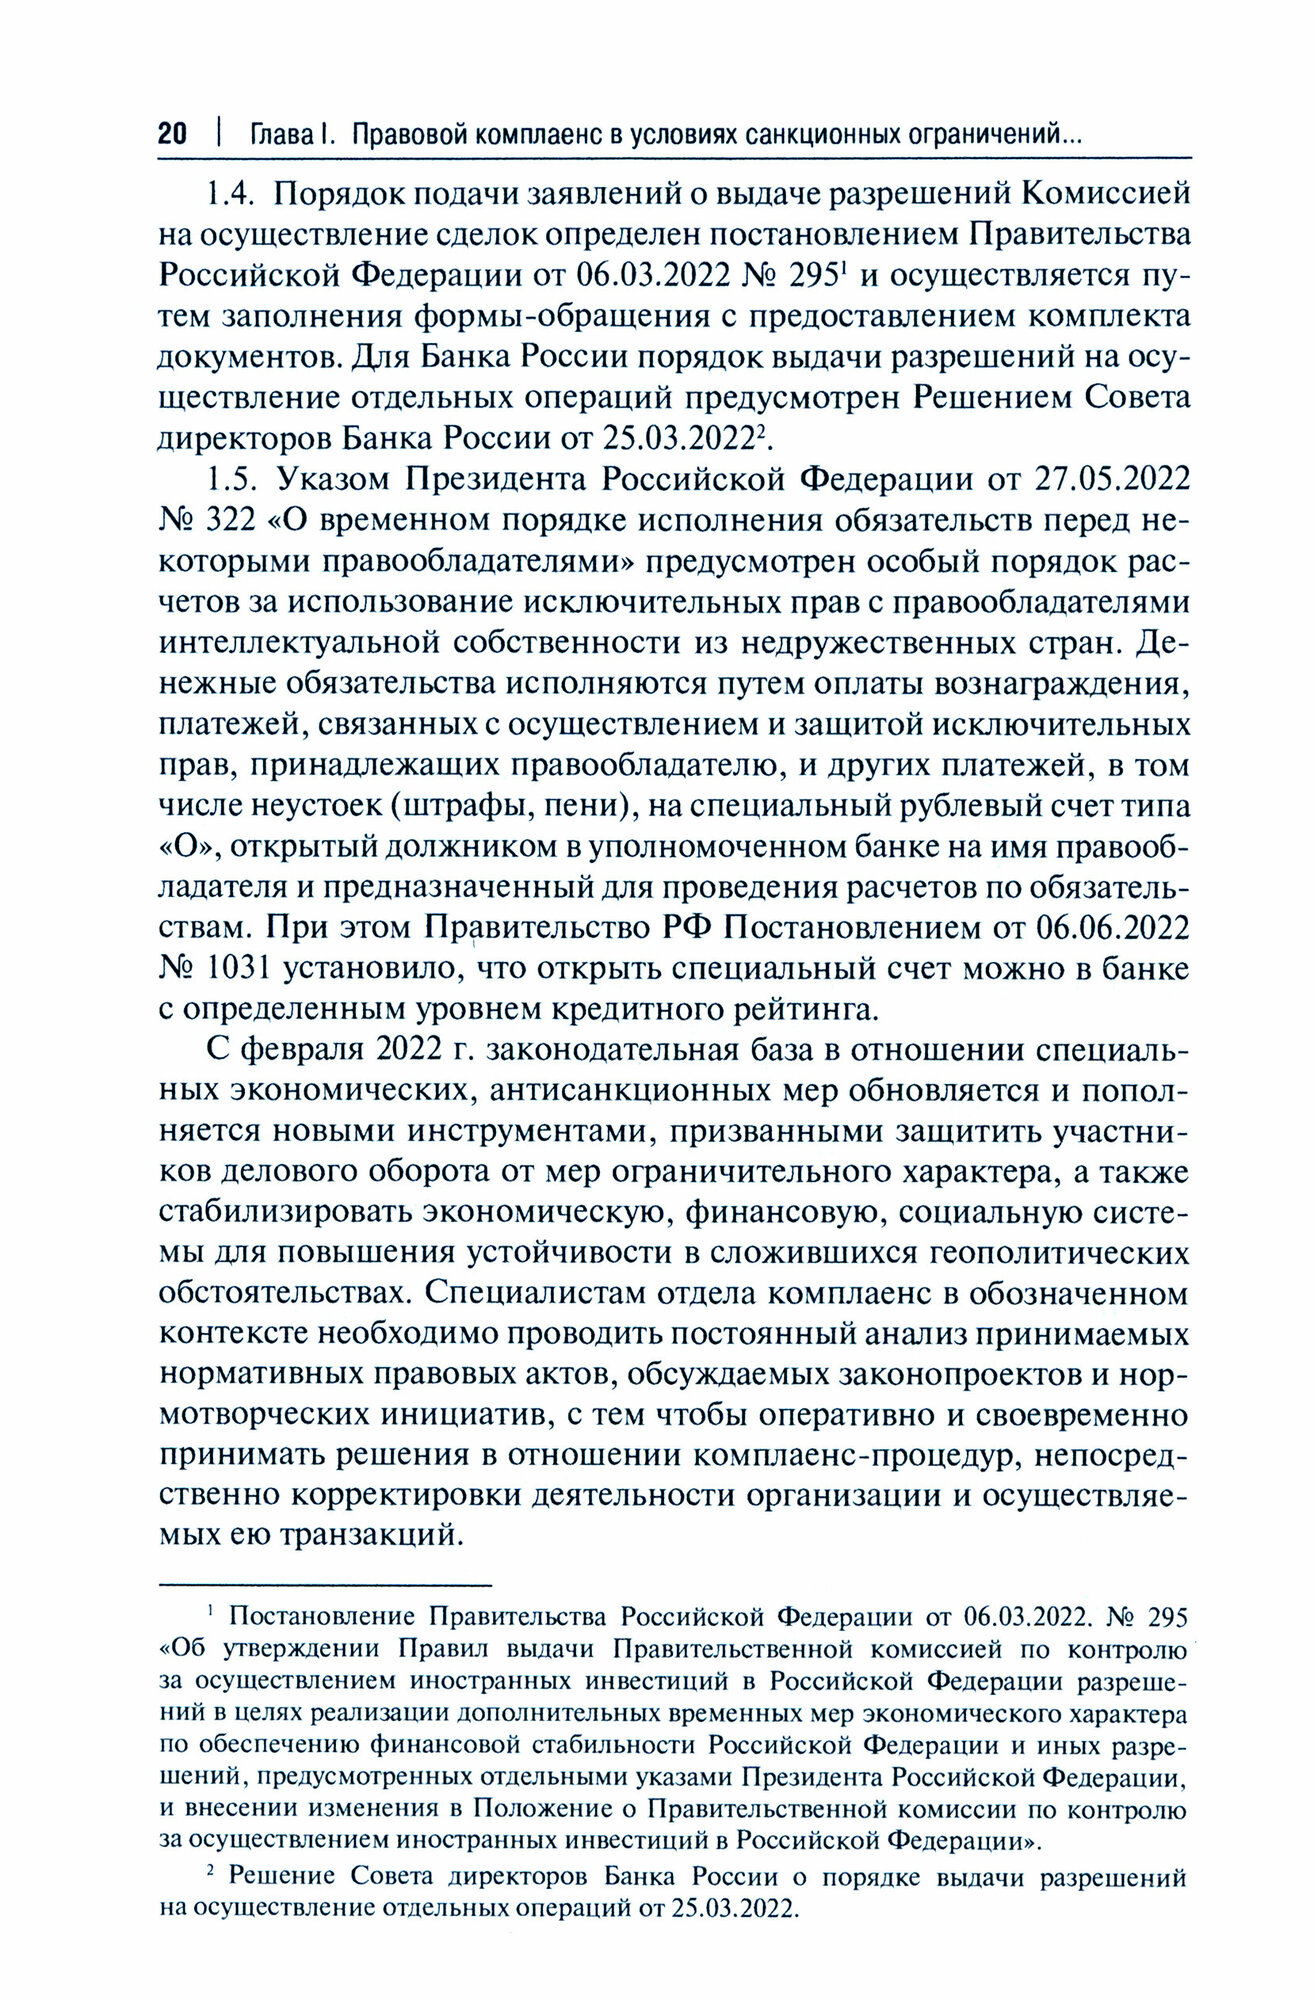 Правовой комплаенс в условиях санкций: монография - фото №2